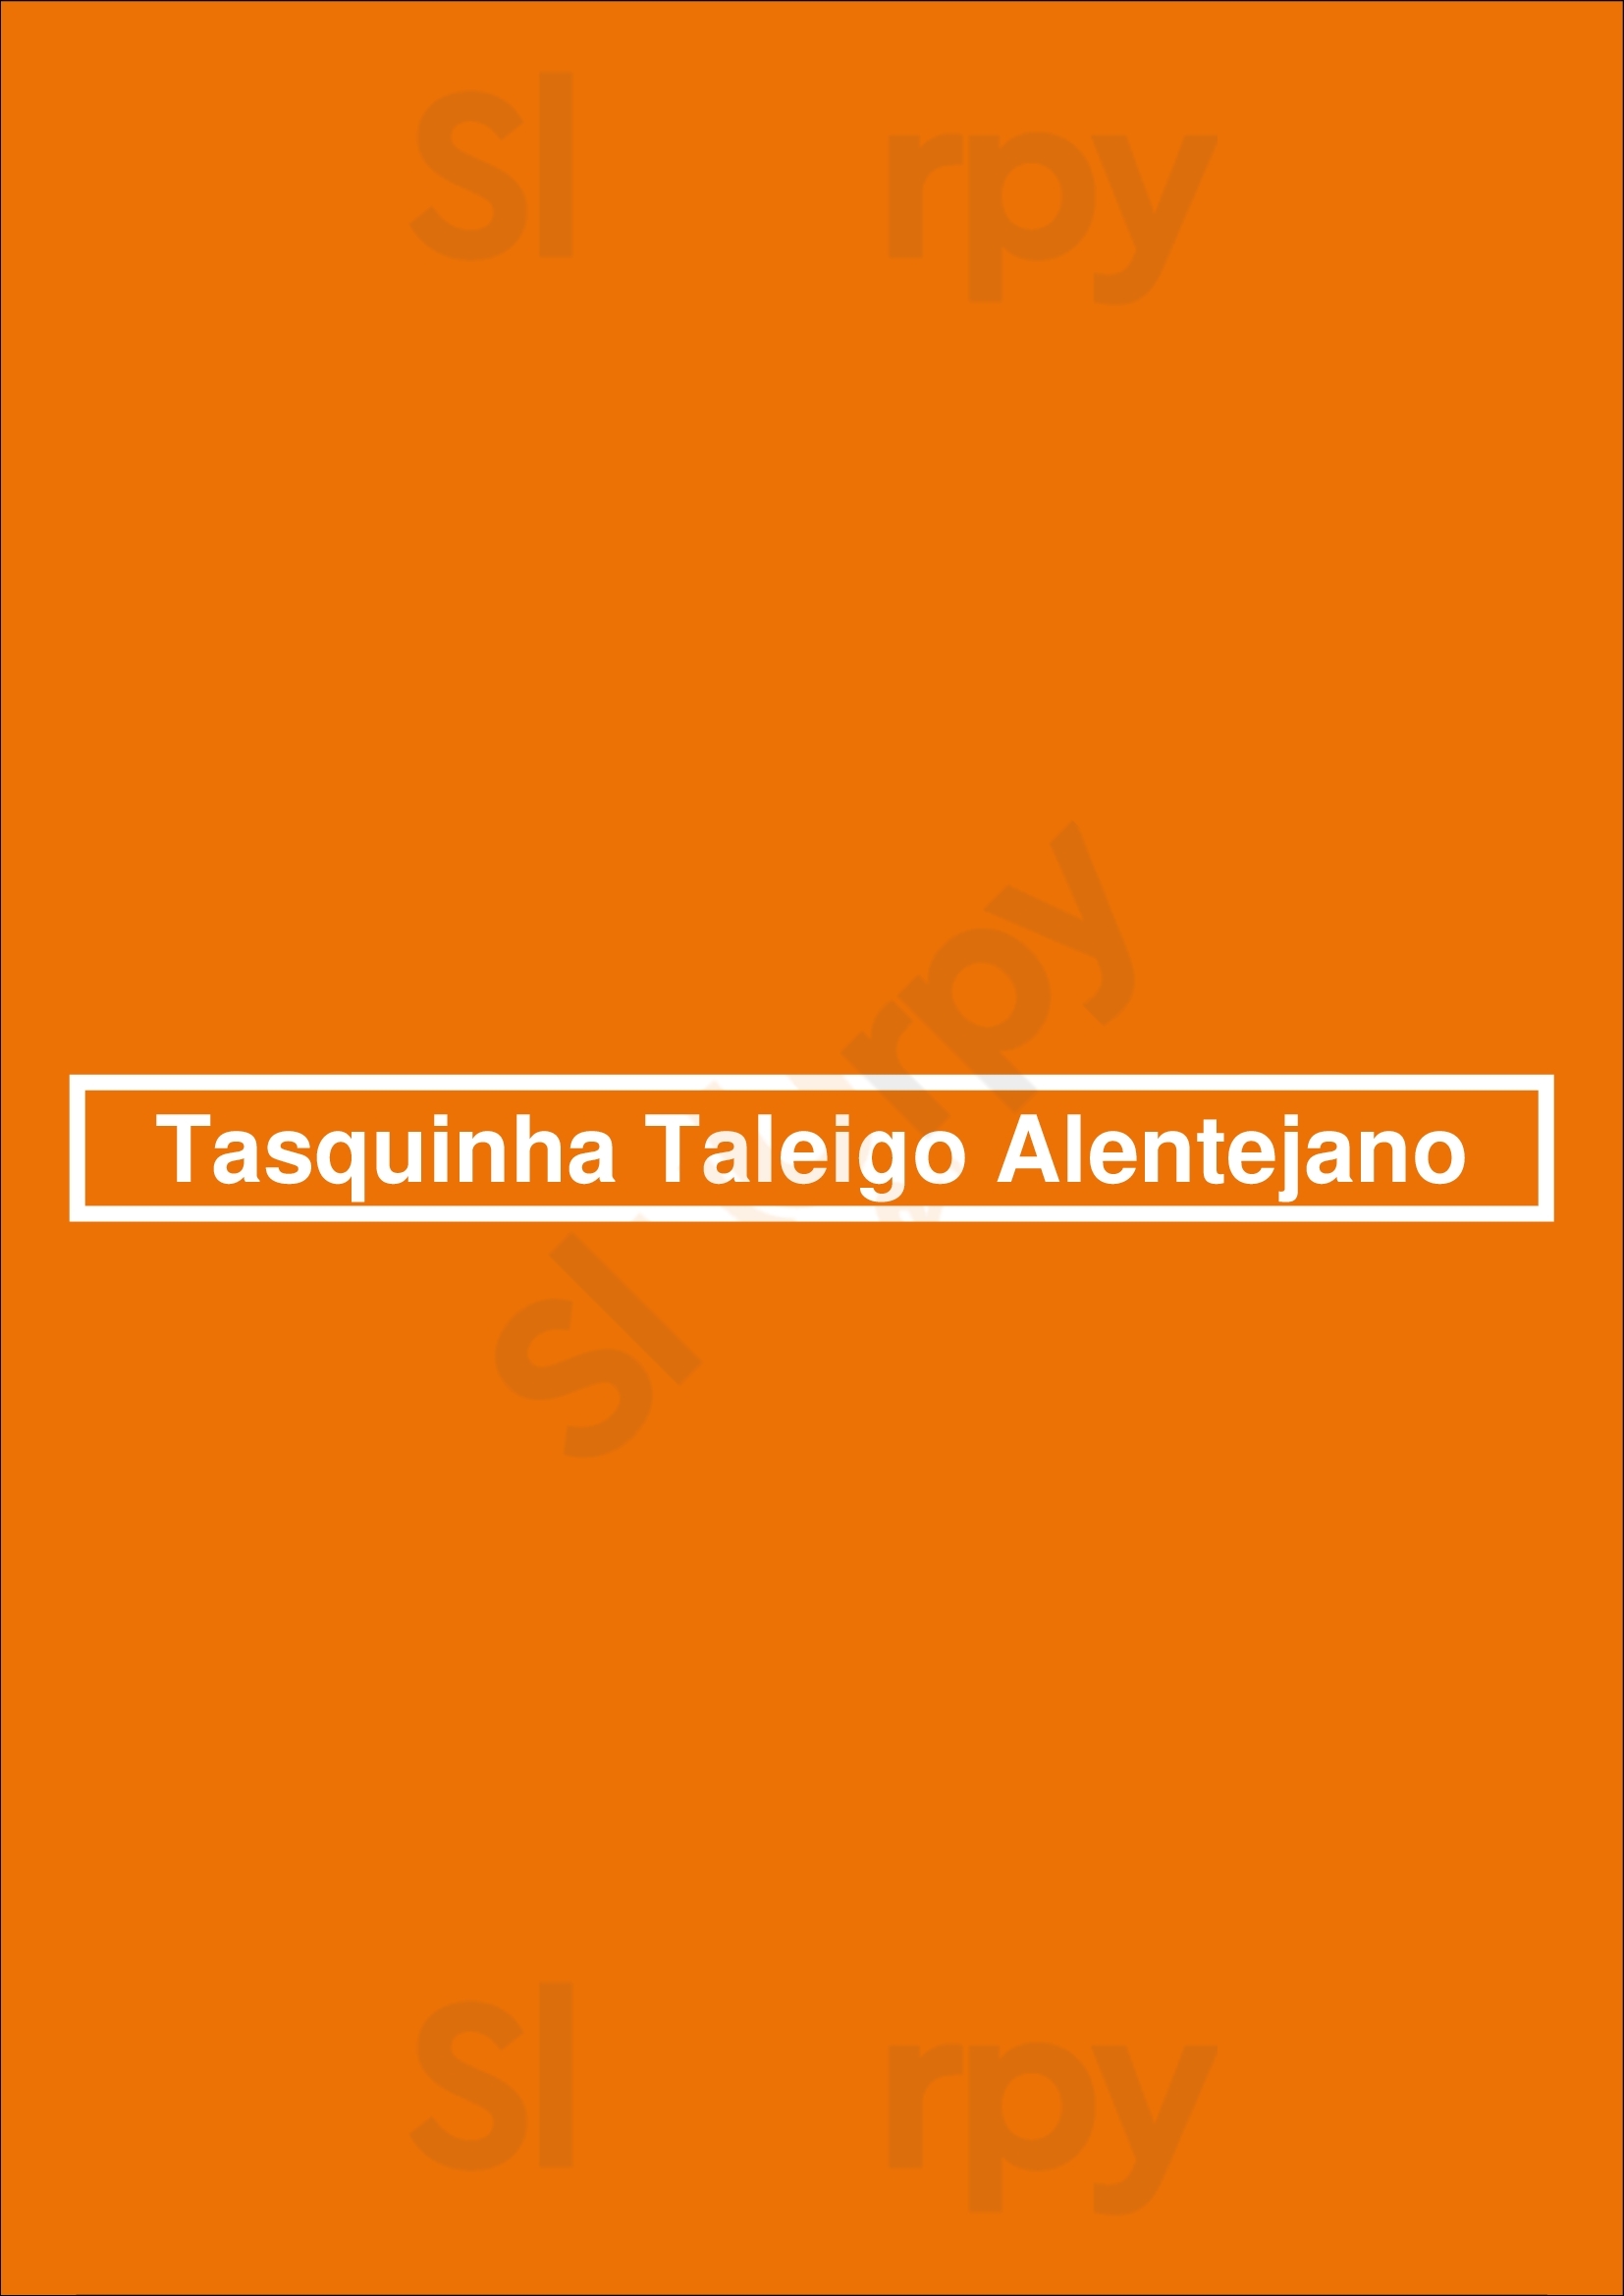 Tasquinha Taleigo Alentejano Lisboa Menu - 1